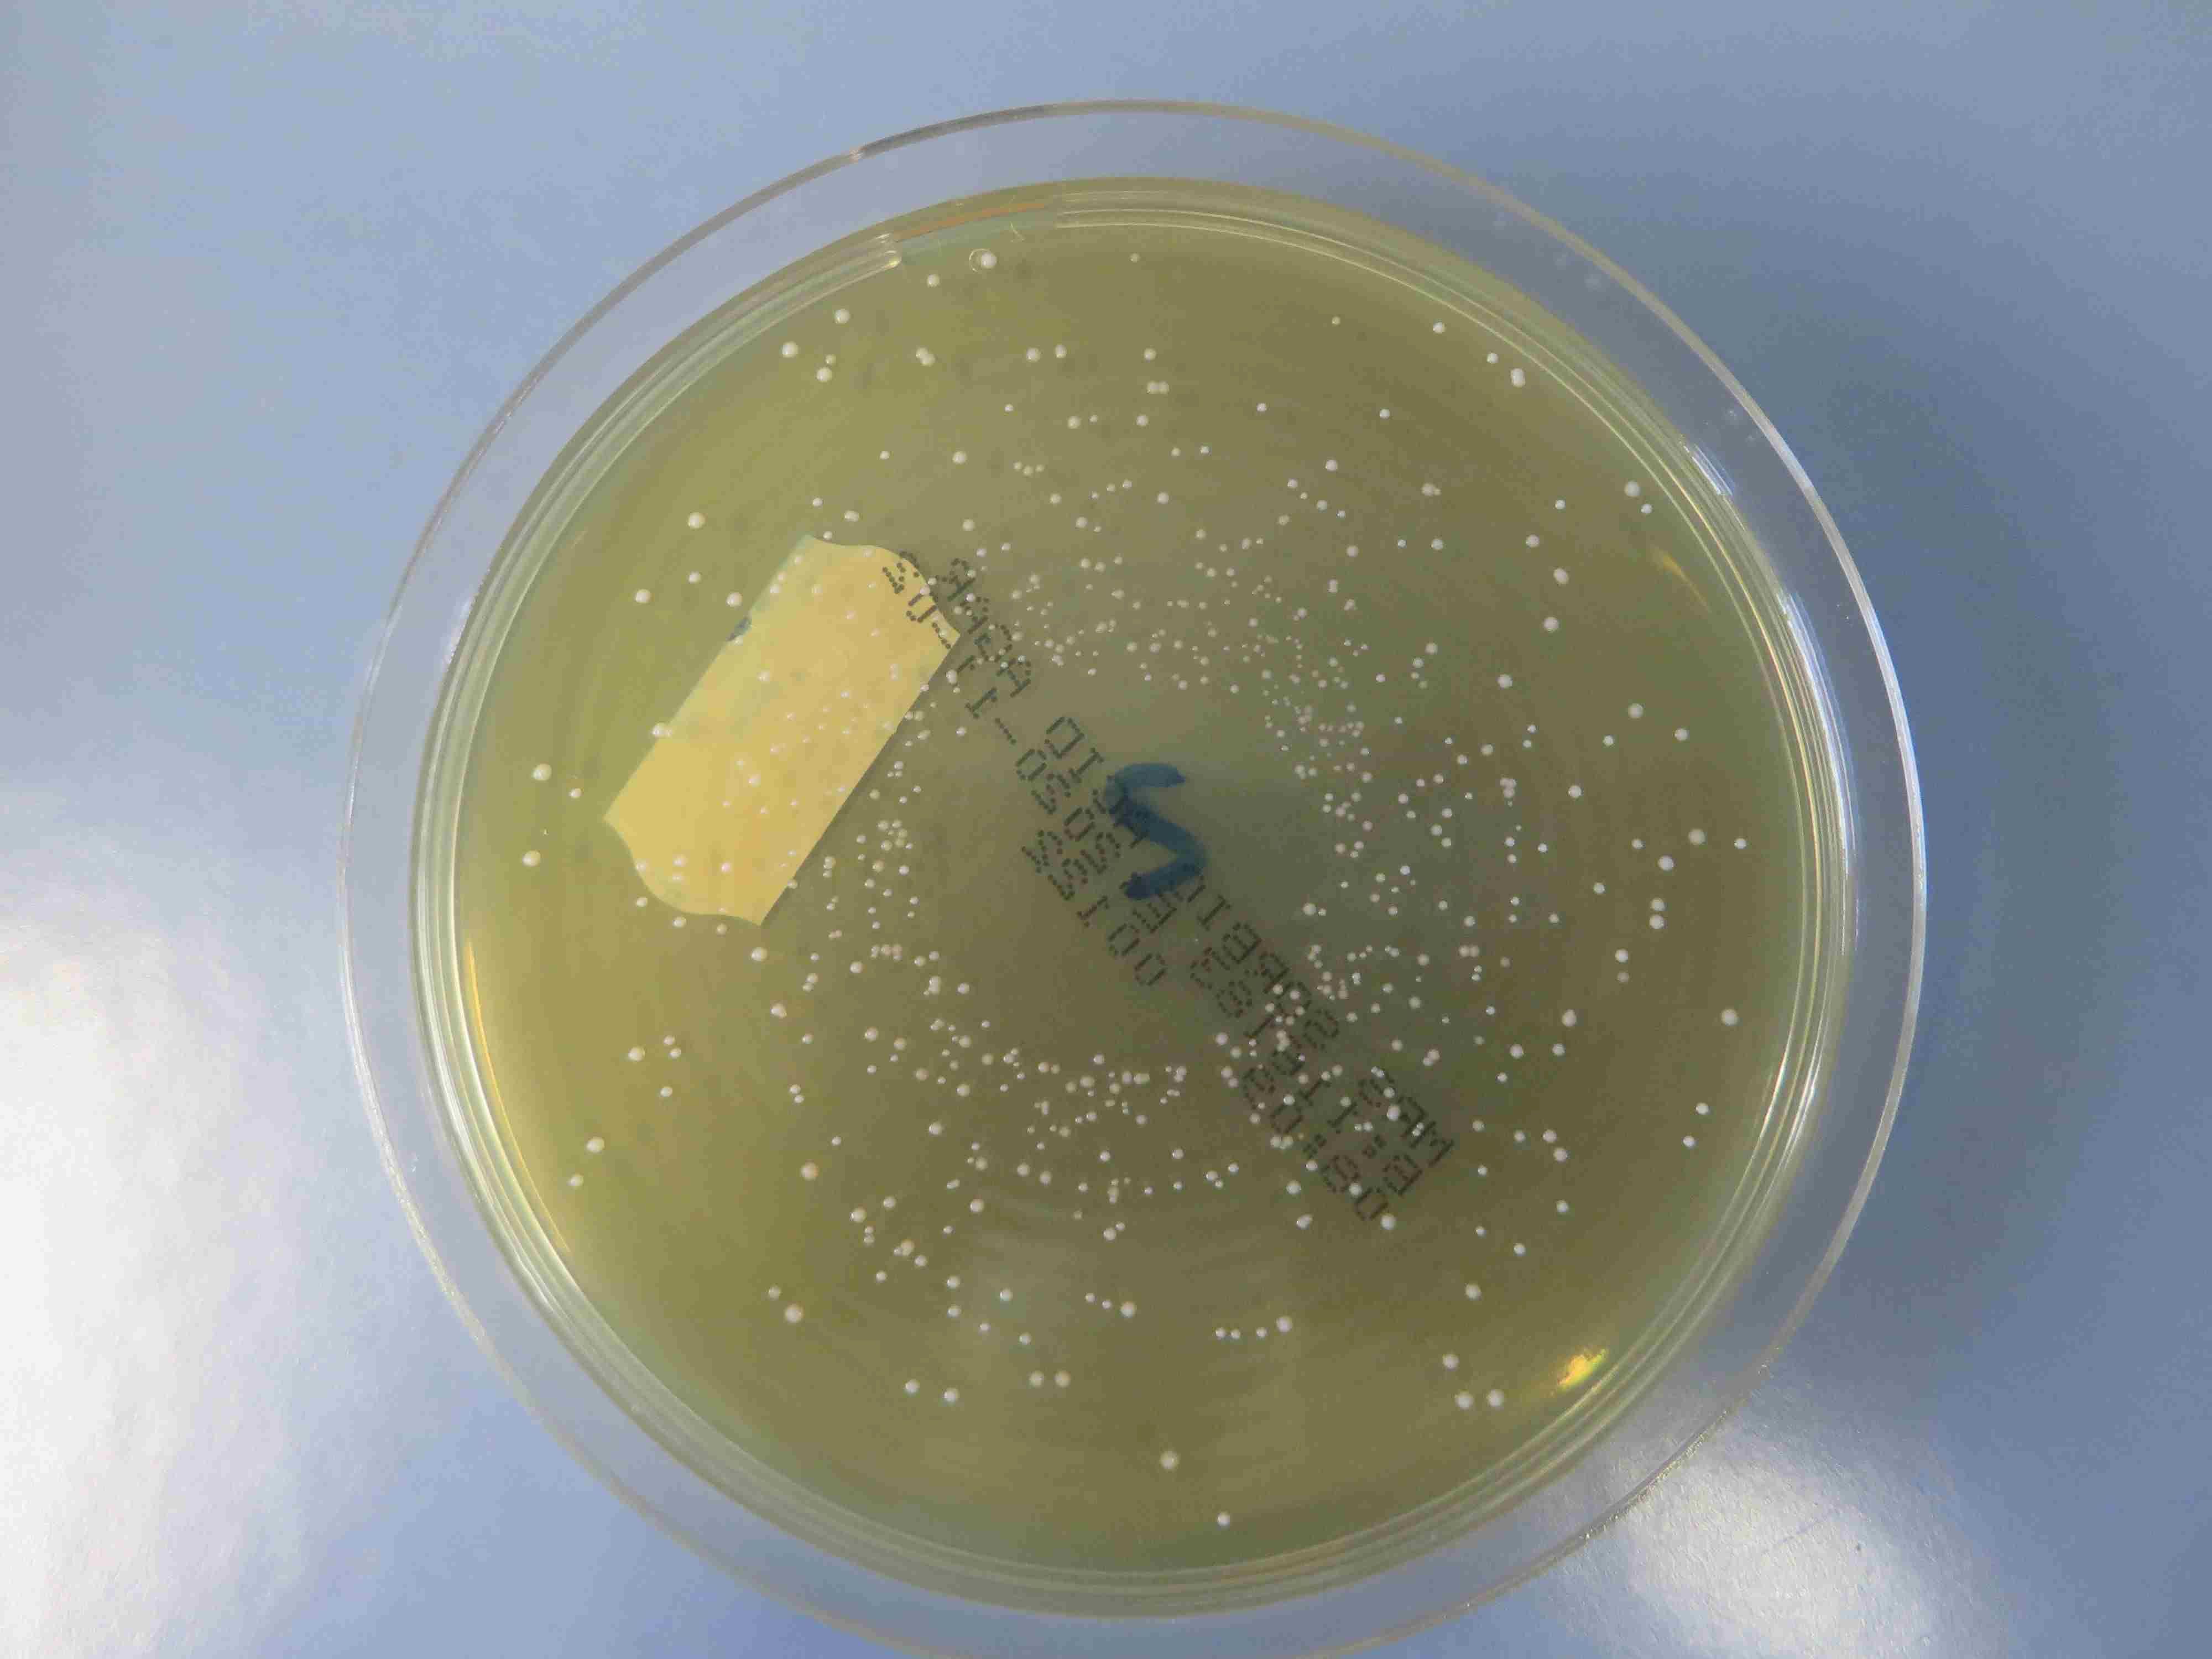 Das Bild zeigt eine Petrischale mit Milchsäurebildnerkolonien